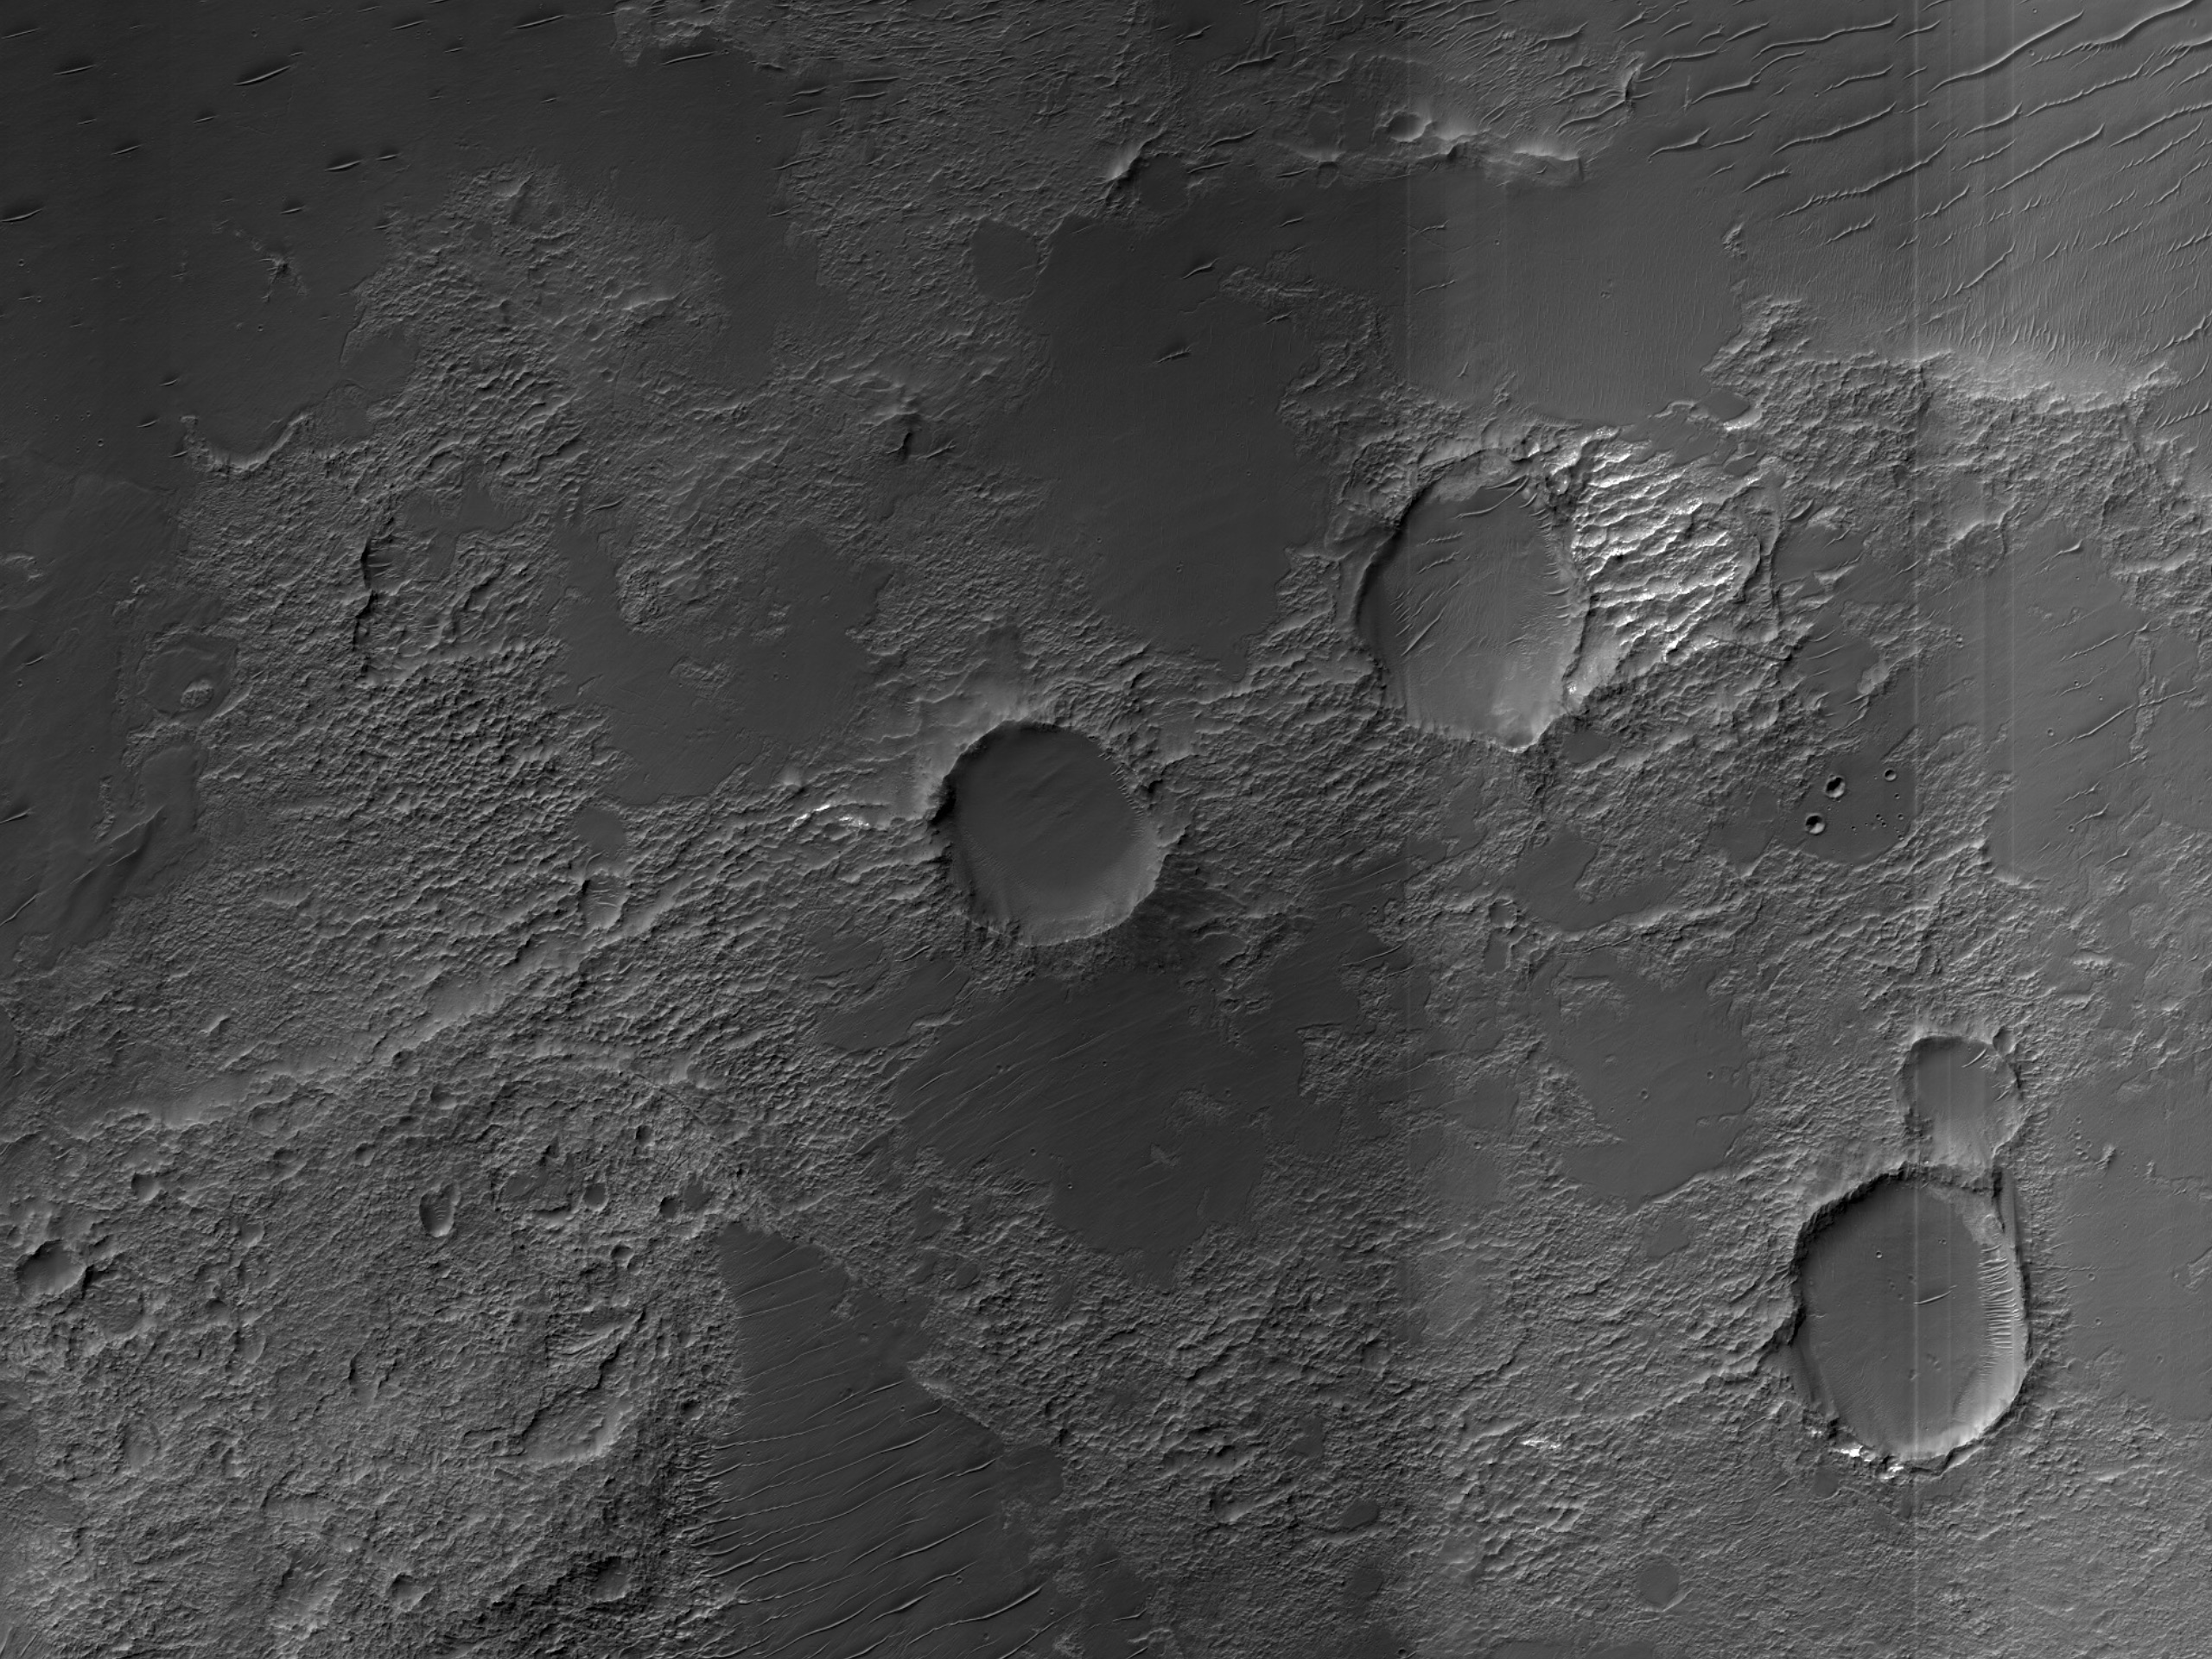 רצפה של עמק אוזבוי ואליס (Uzboi Vallis)